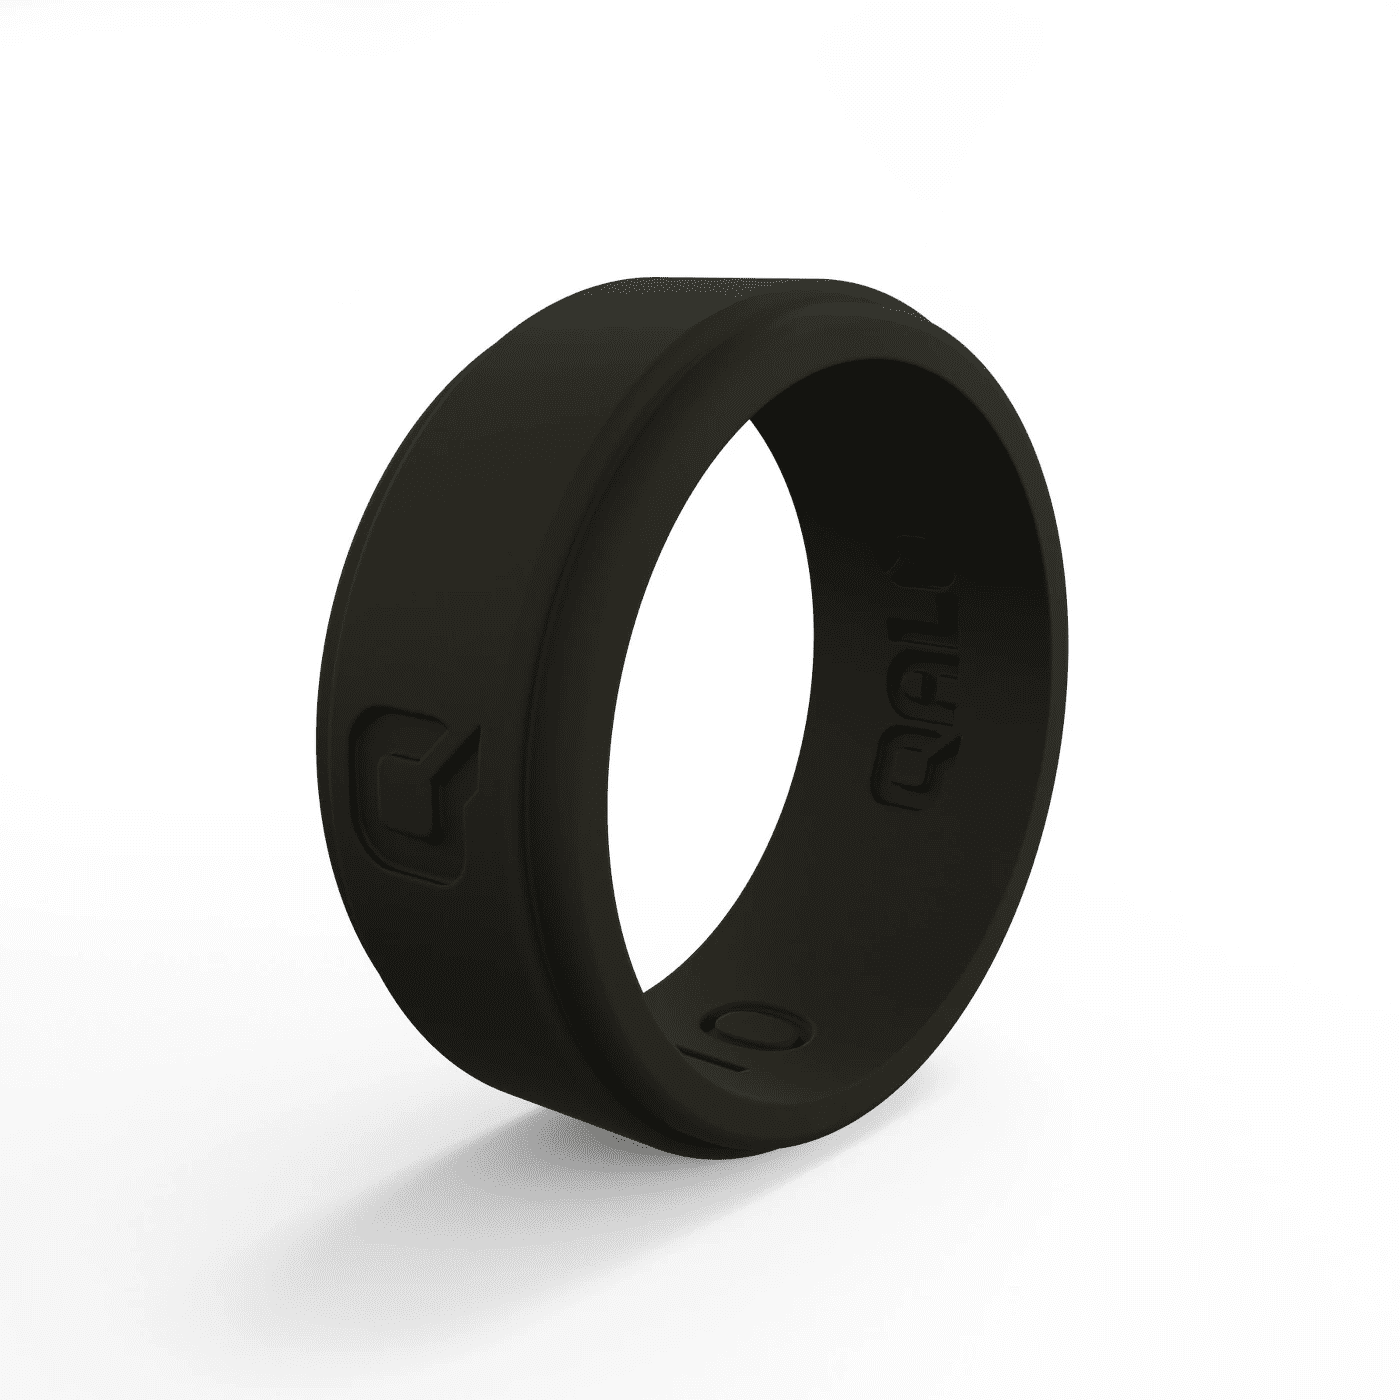 QALO QALO Men's Classic Silicone Ring, Black, Size 9